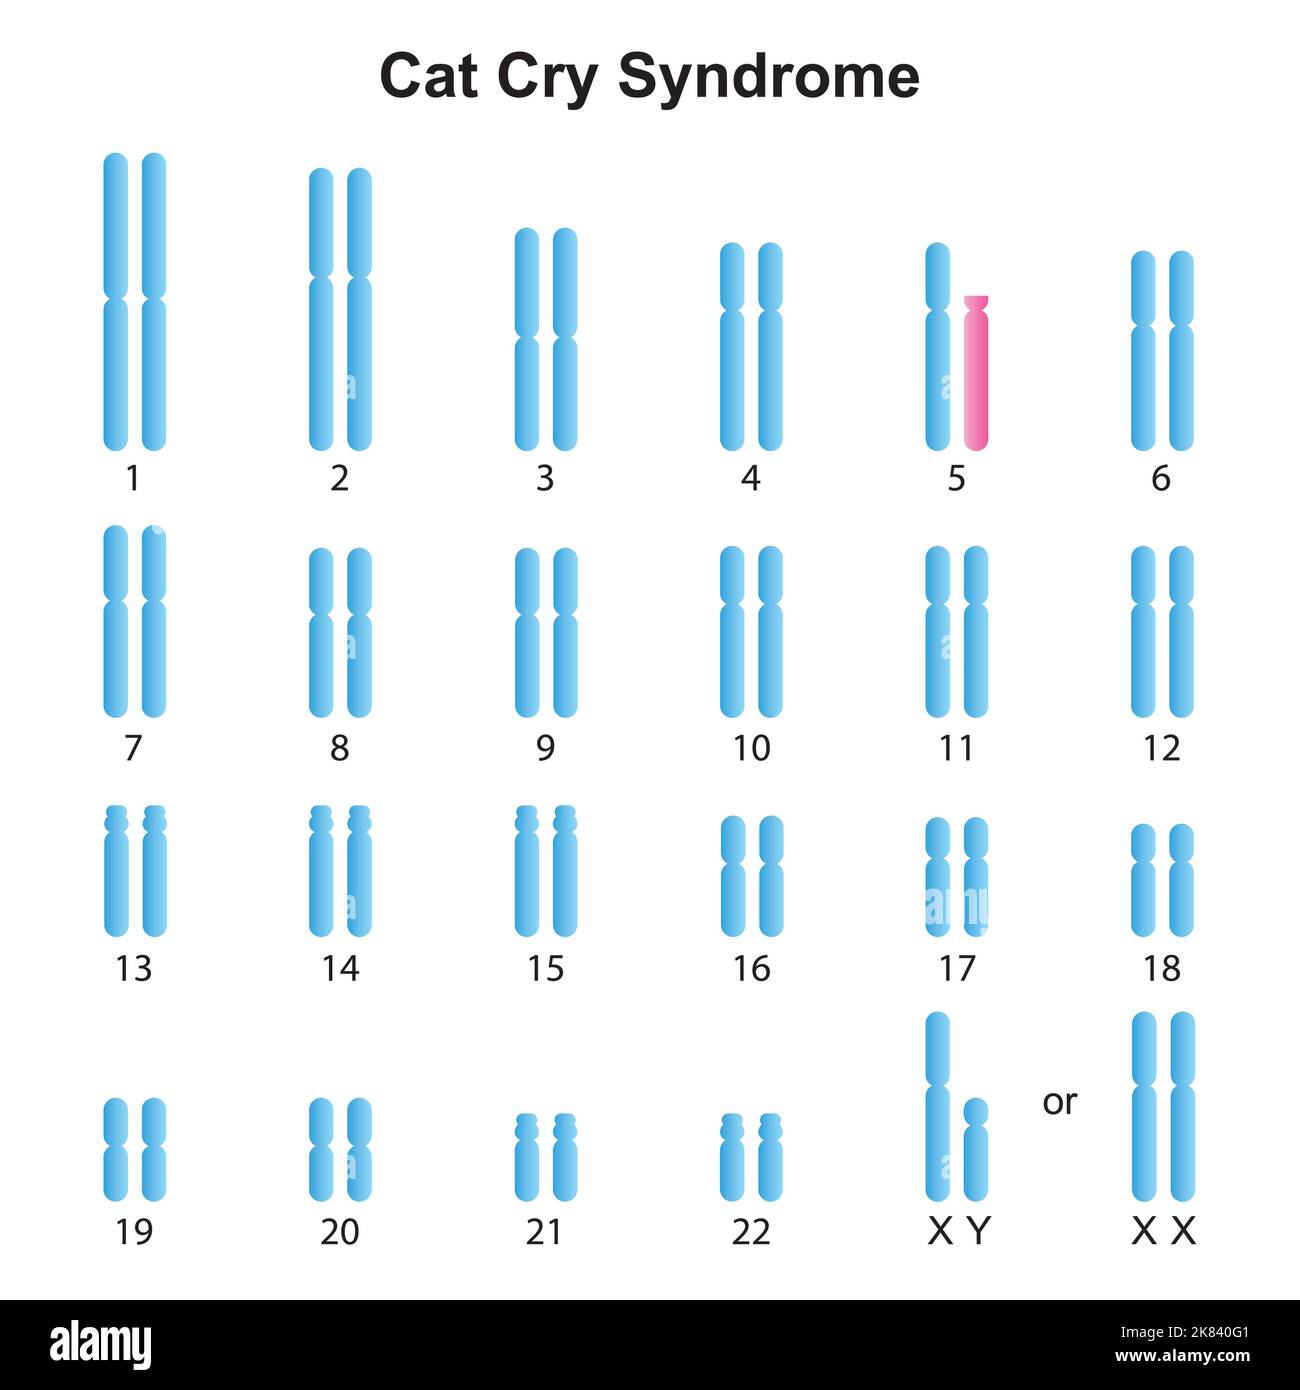 Progettazione scientifica del Karyotype della sindrome di Cry del gatto. Simboli colorati. Illustrazione vettoriale. Illustrazione Vettoriale